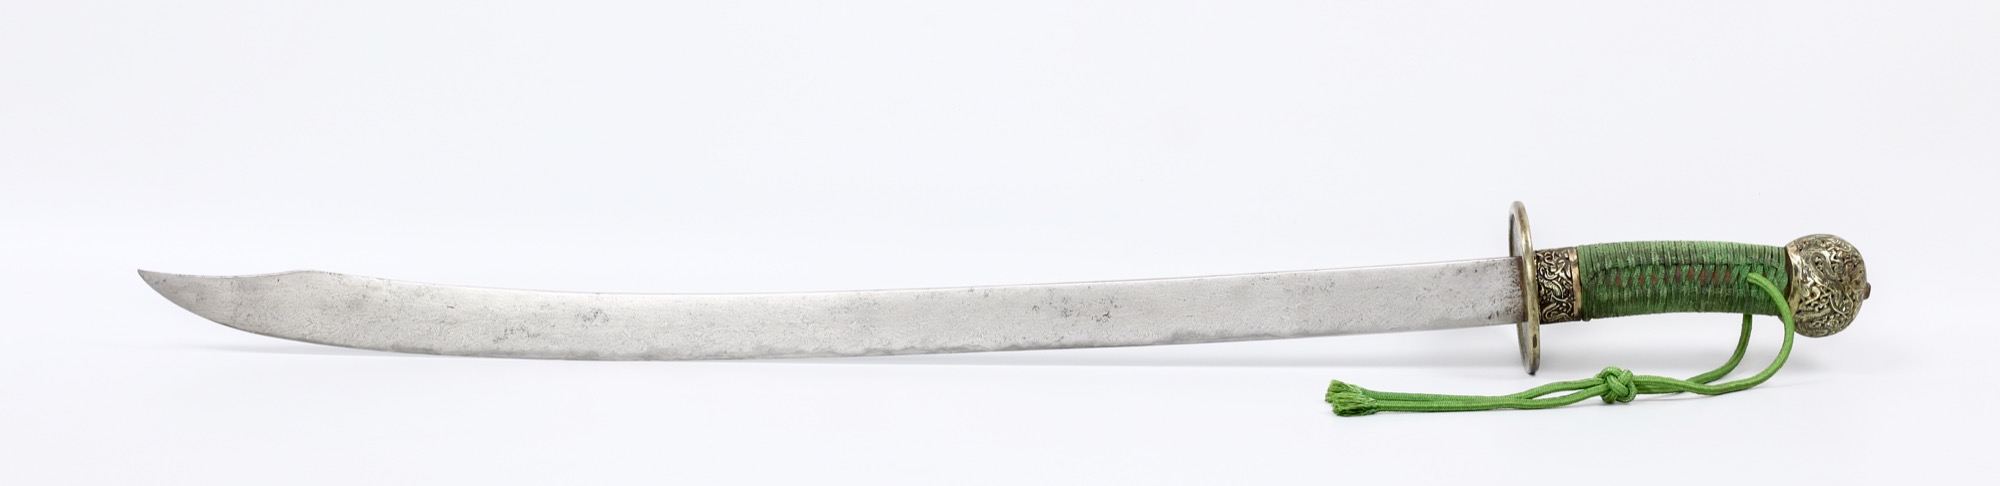 Rare Chinese huawengang saber